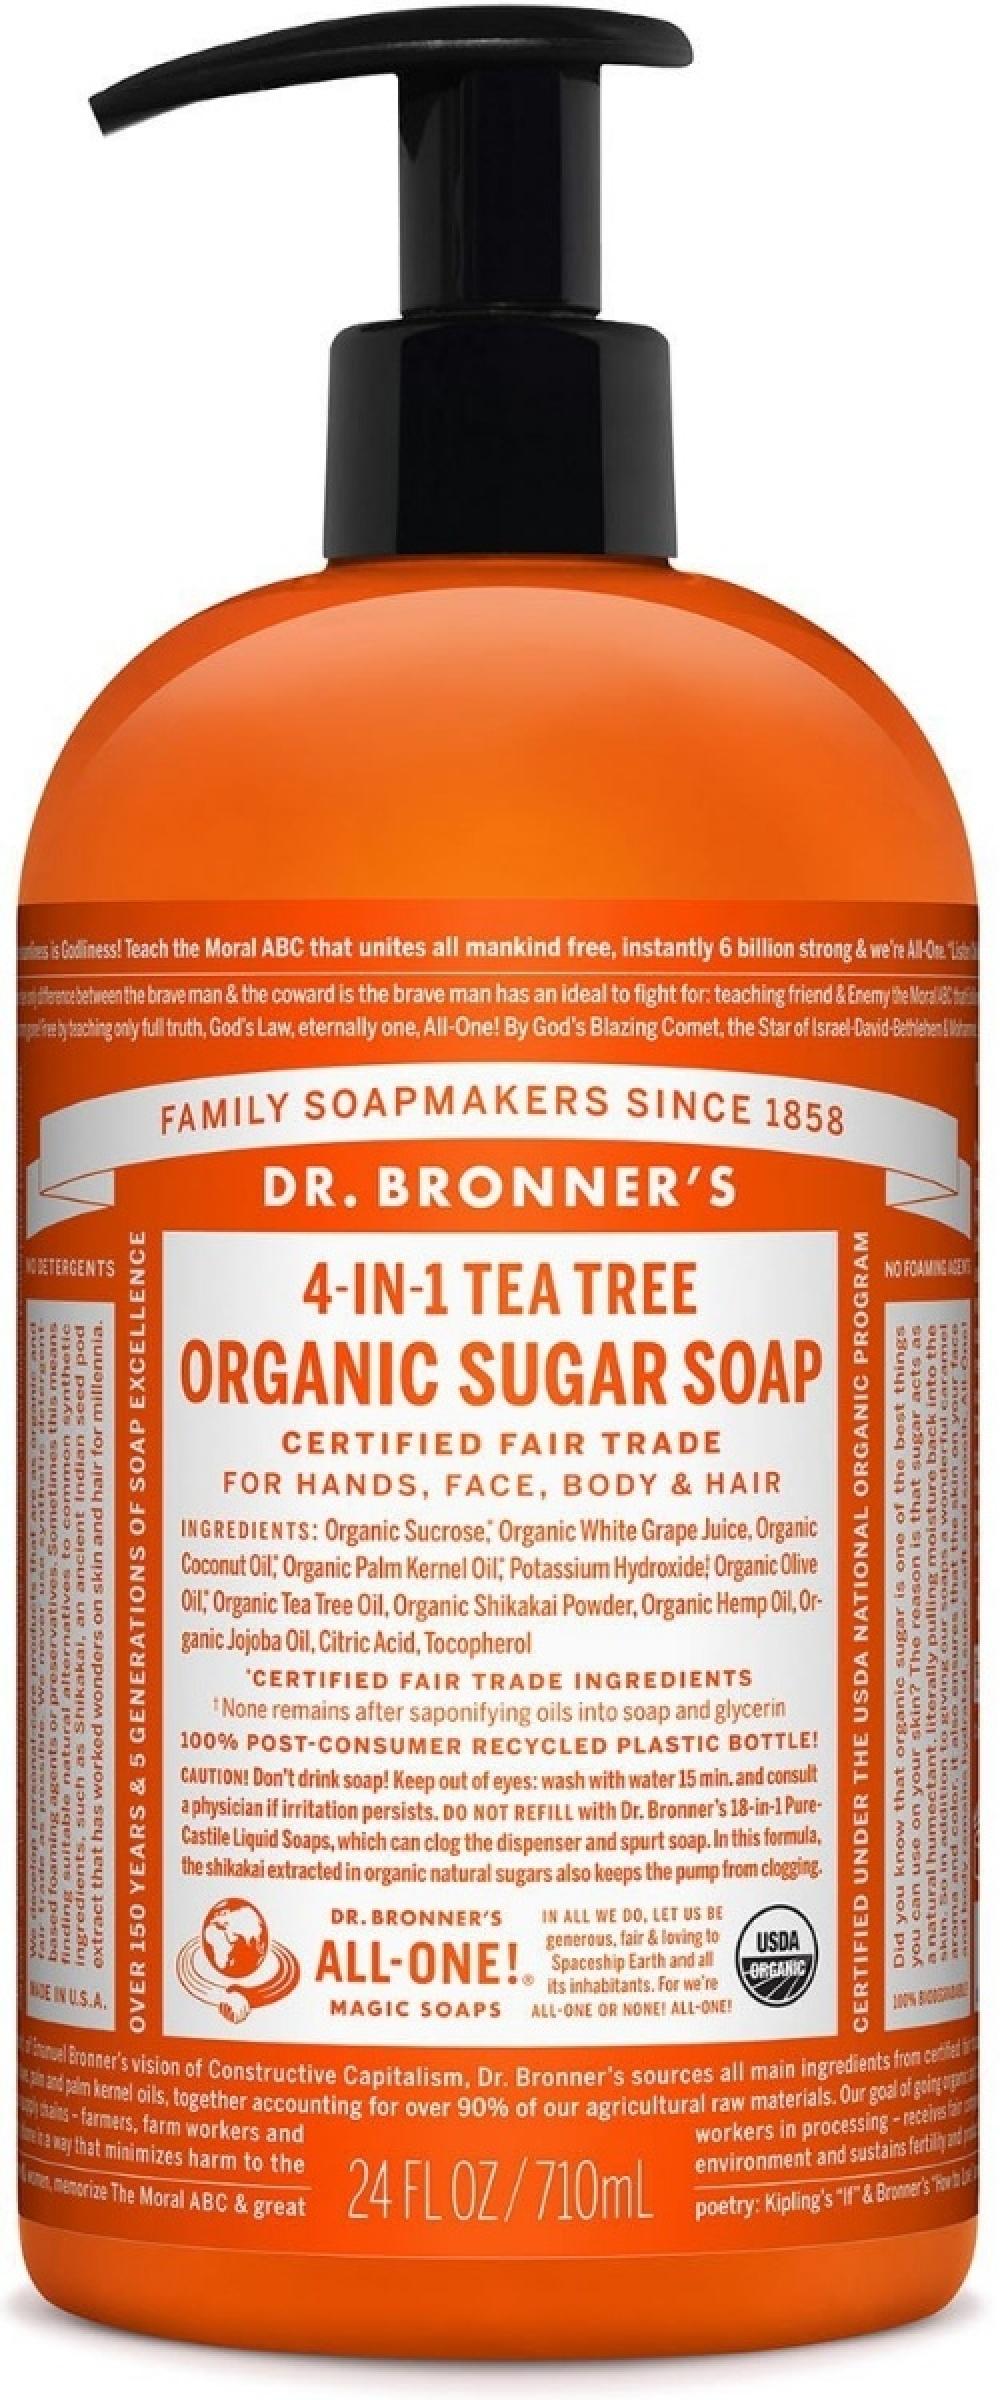 Dr. Bronner's Organic Sugar Soap